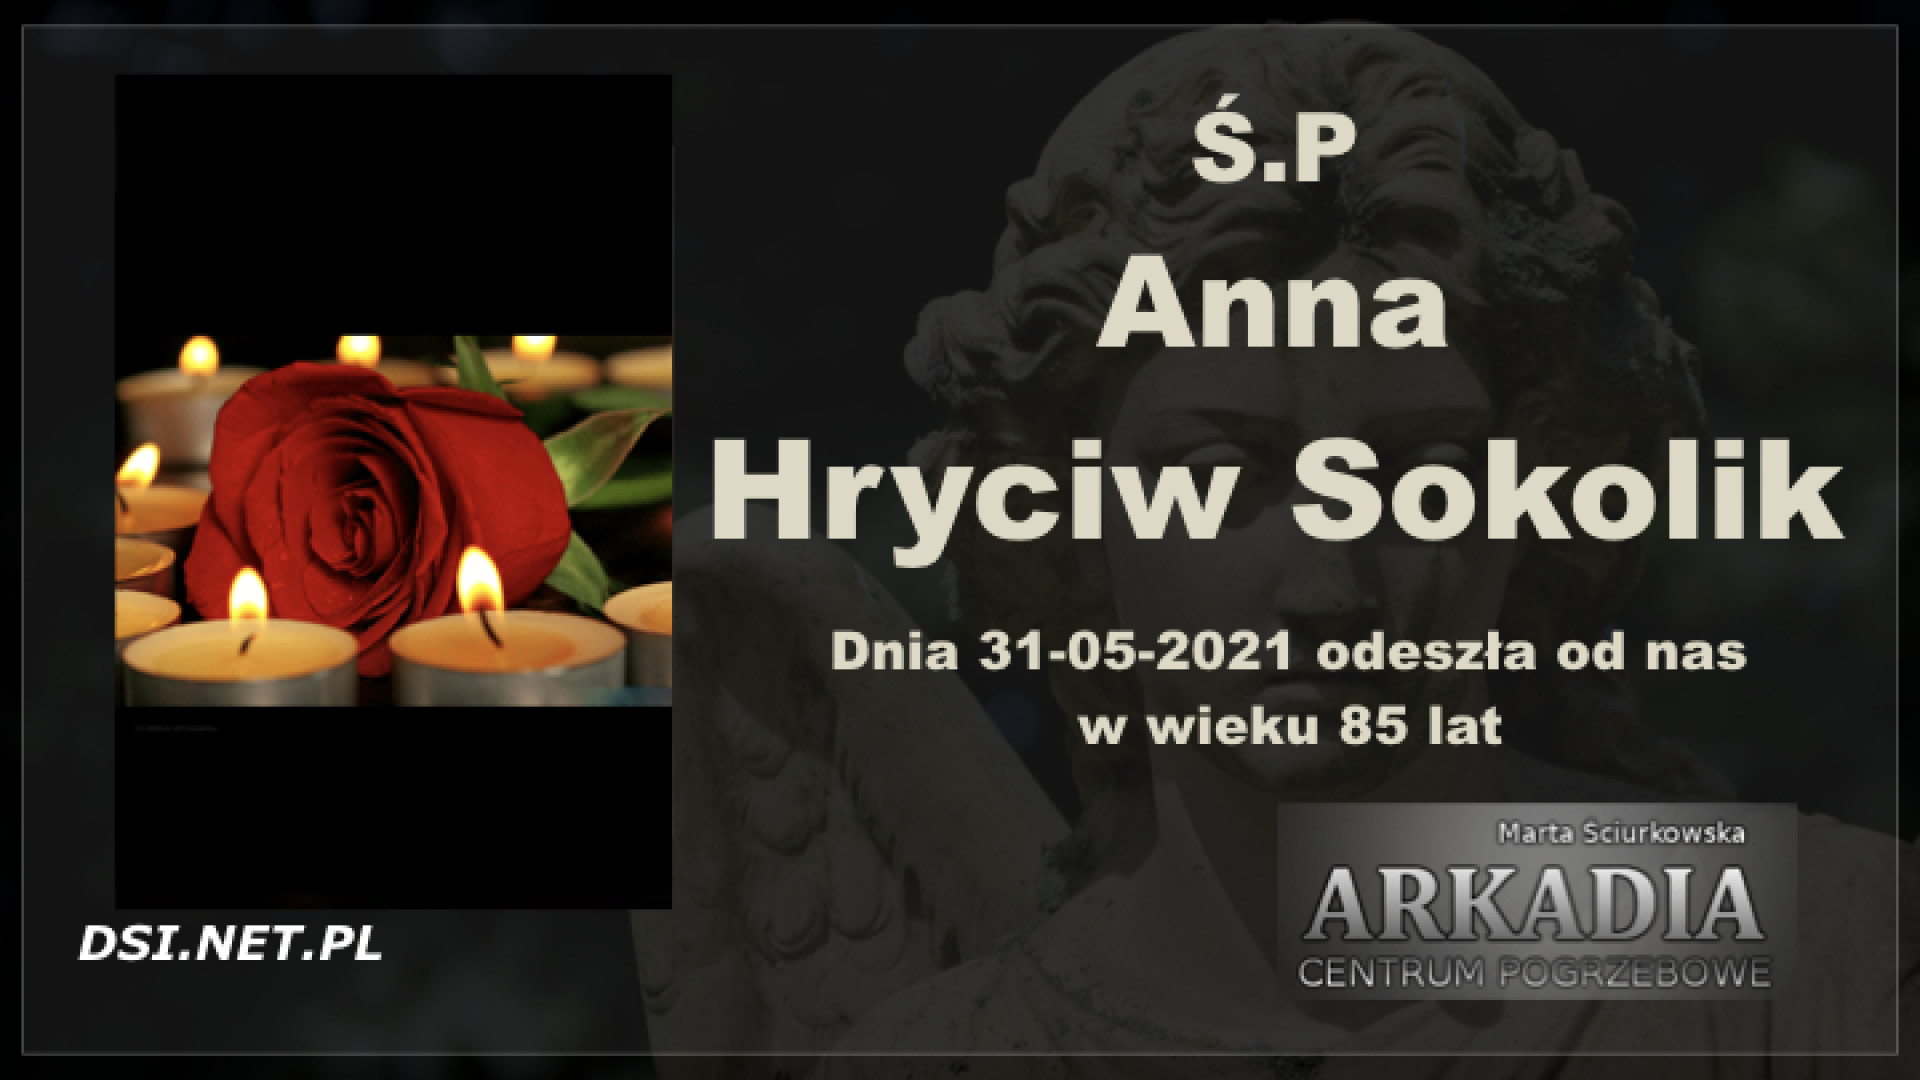 Ś.P. Anna Hryciw Sokolik